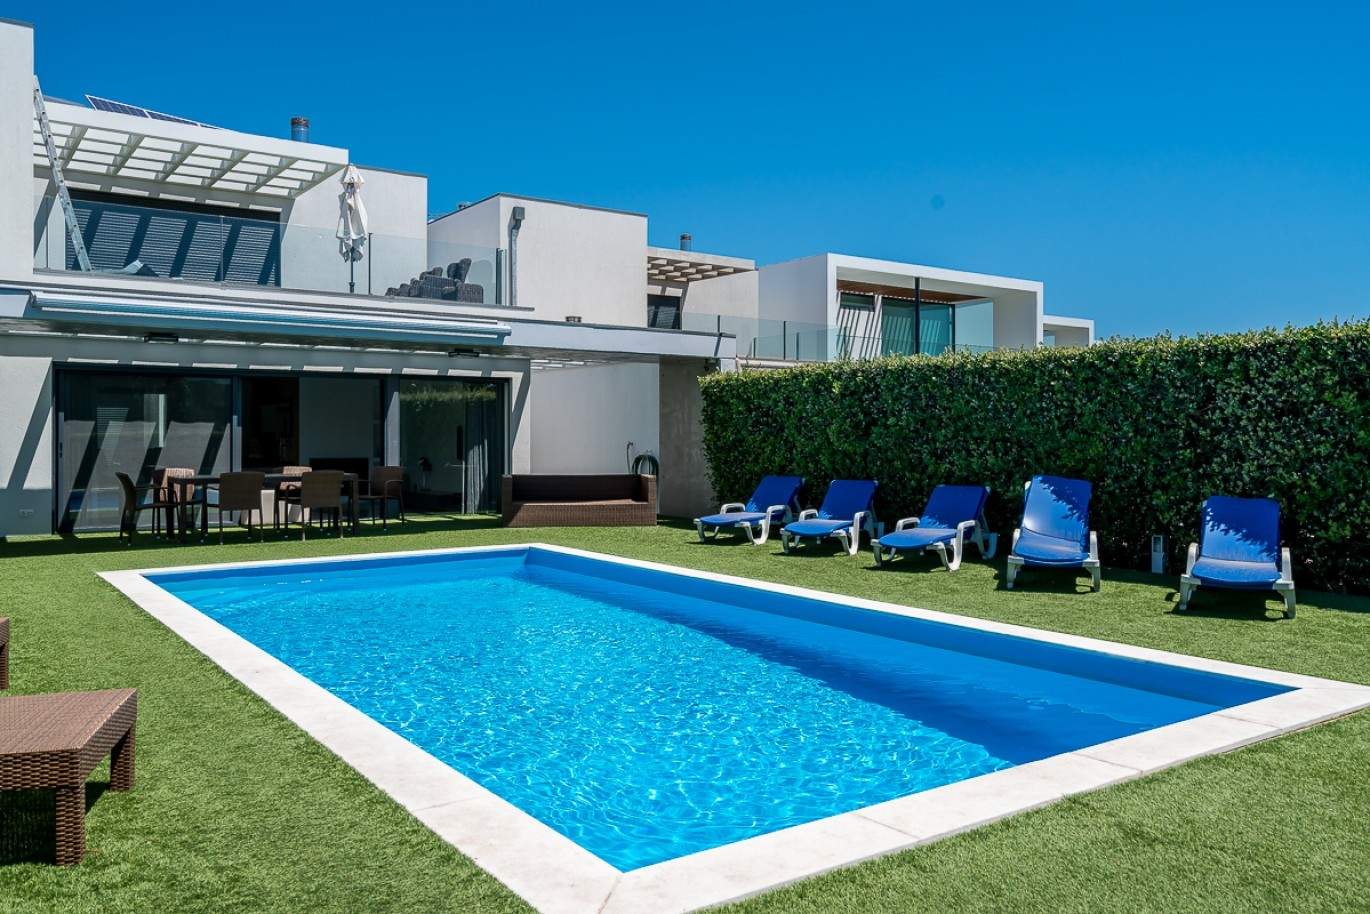 Moradia à venda com piscina, junto a golfe e praia, Vilamoura, Algarve_78049